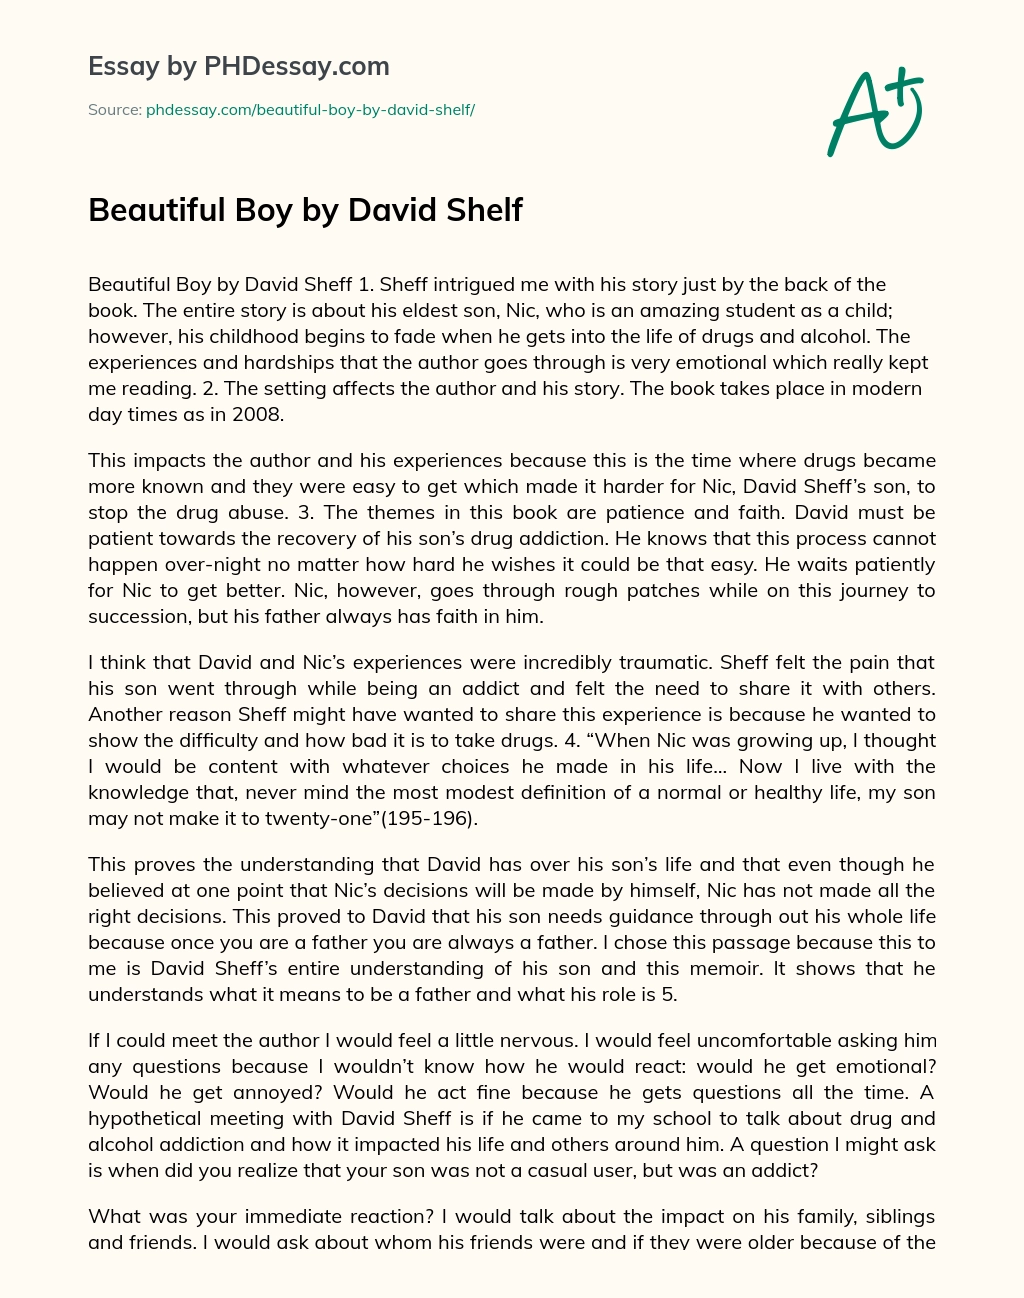 Beautiful Boy by David Shelf essay